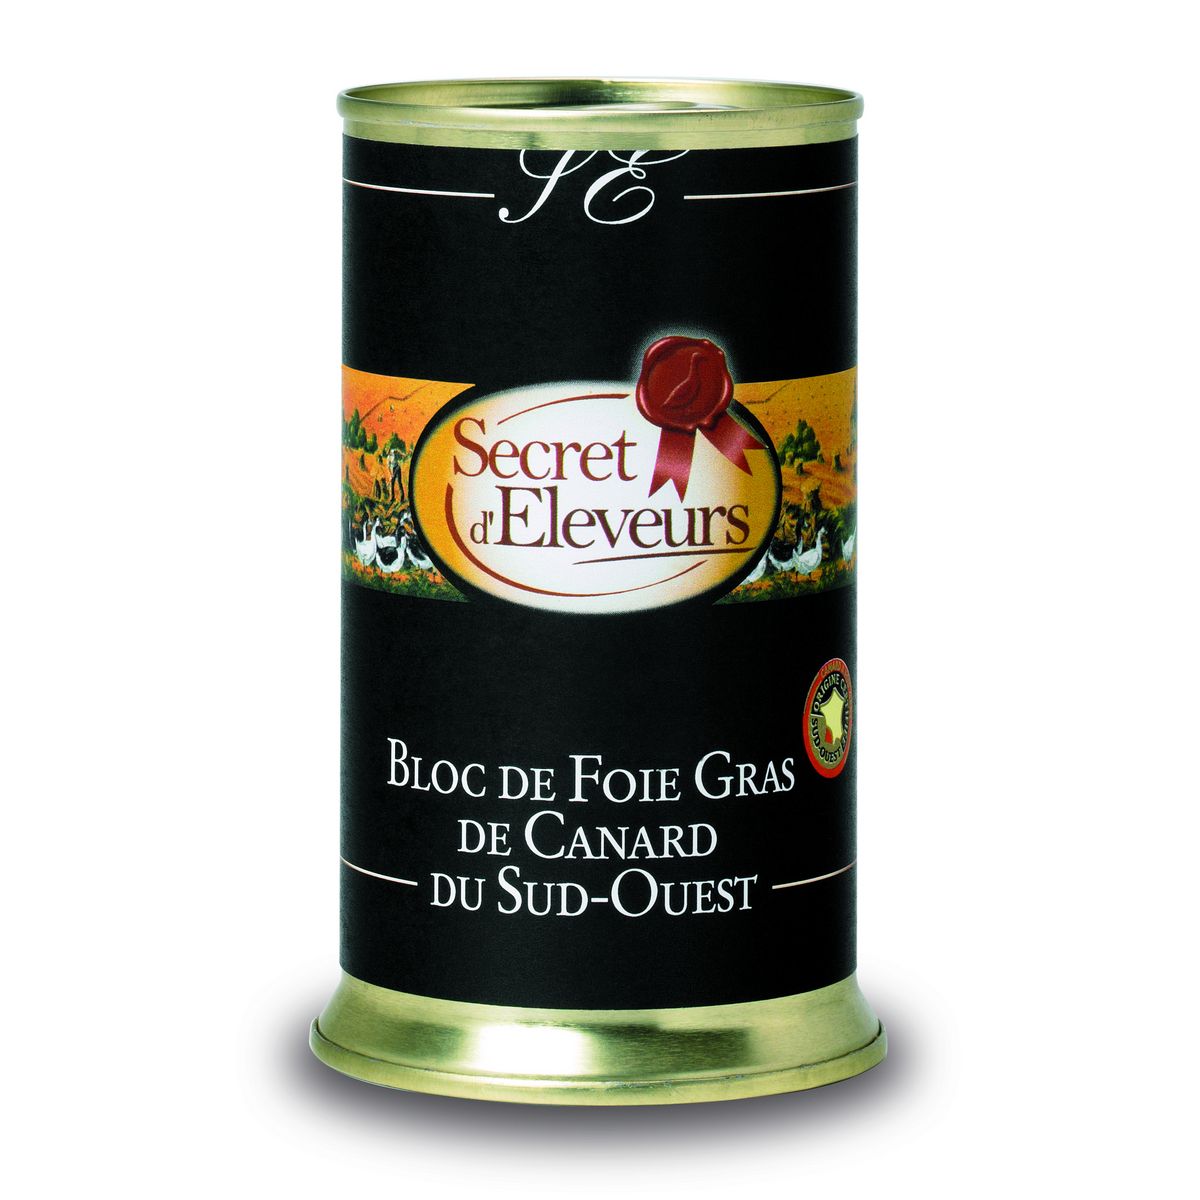 SECRET D'ELEVEURS Bloc de foie gras de canard du Sud-Ouest IGP boîte 350g